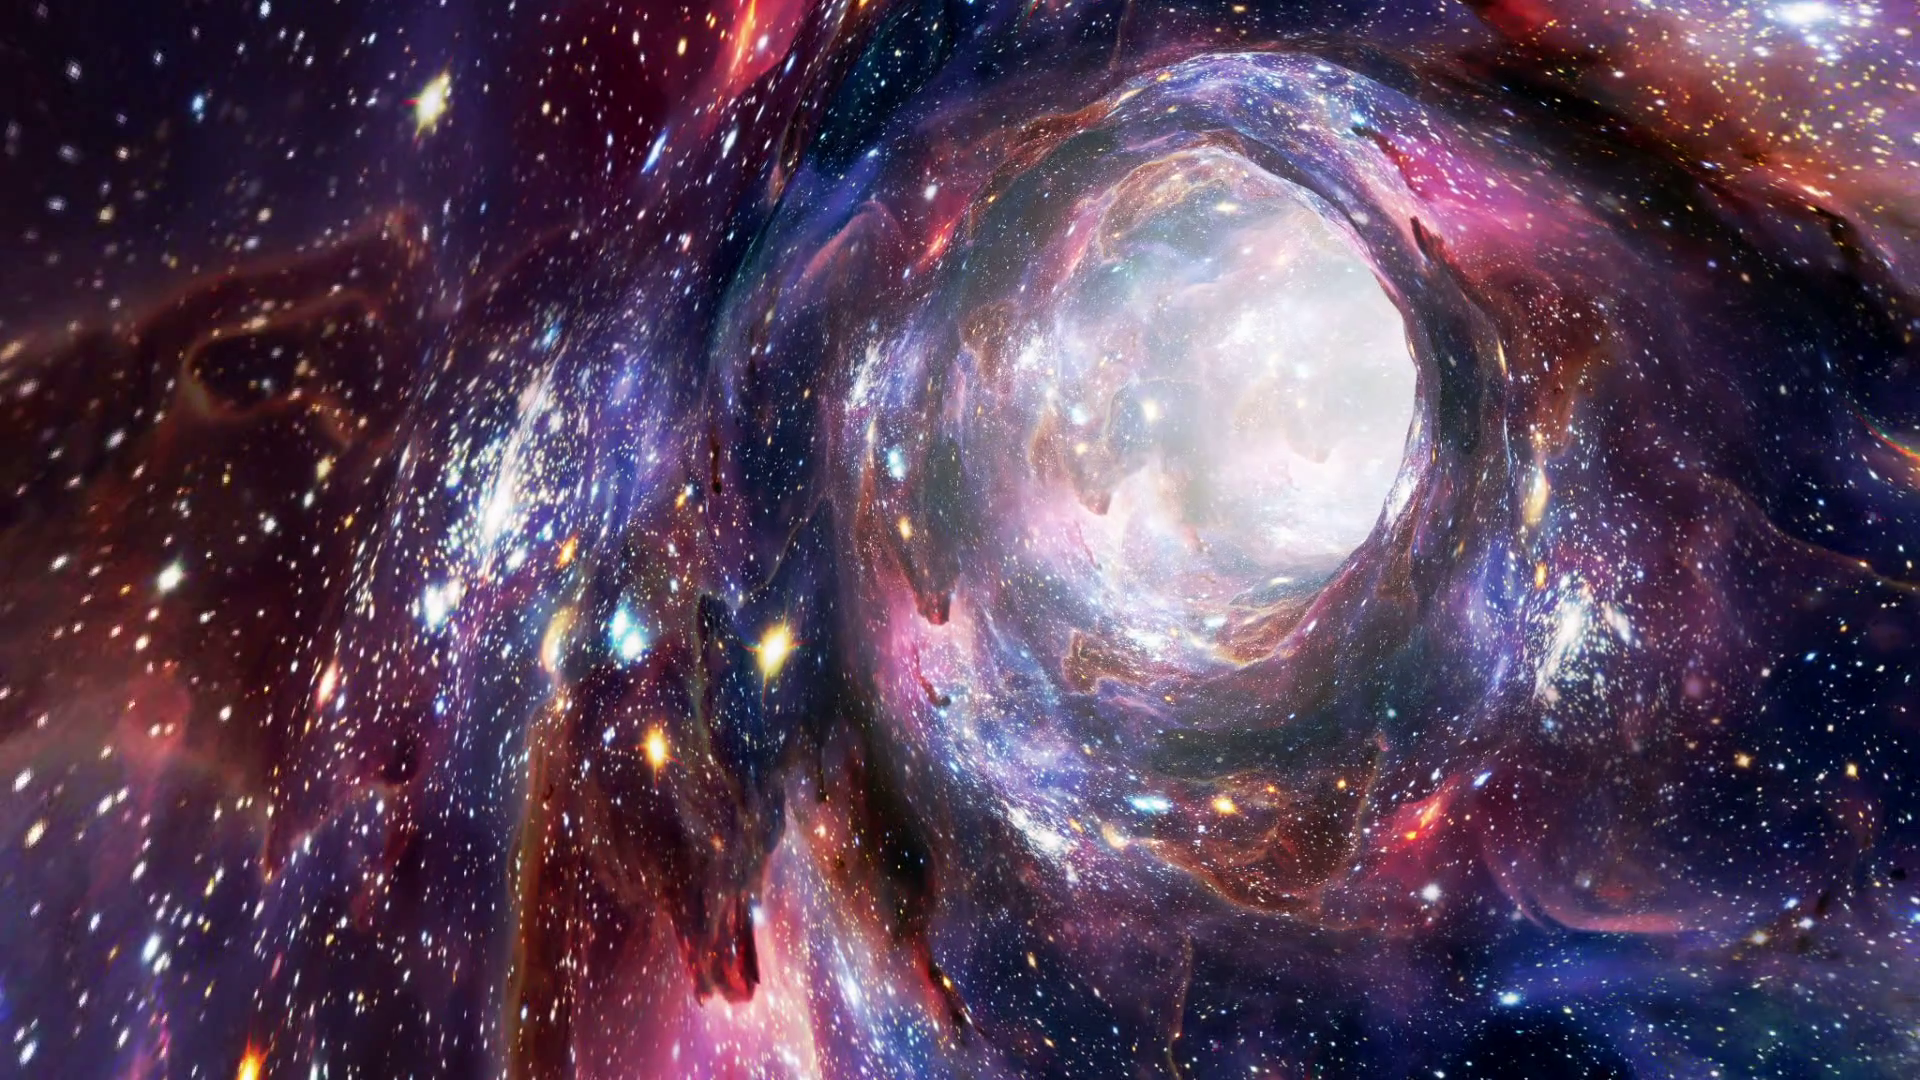 multiversum wallpaper,galaxis,nebel,weltraum,universum,astronomisches objekt